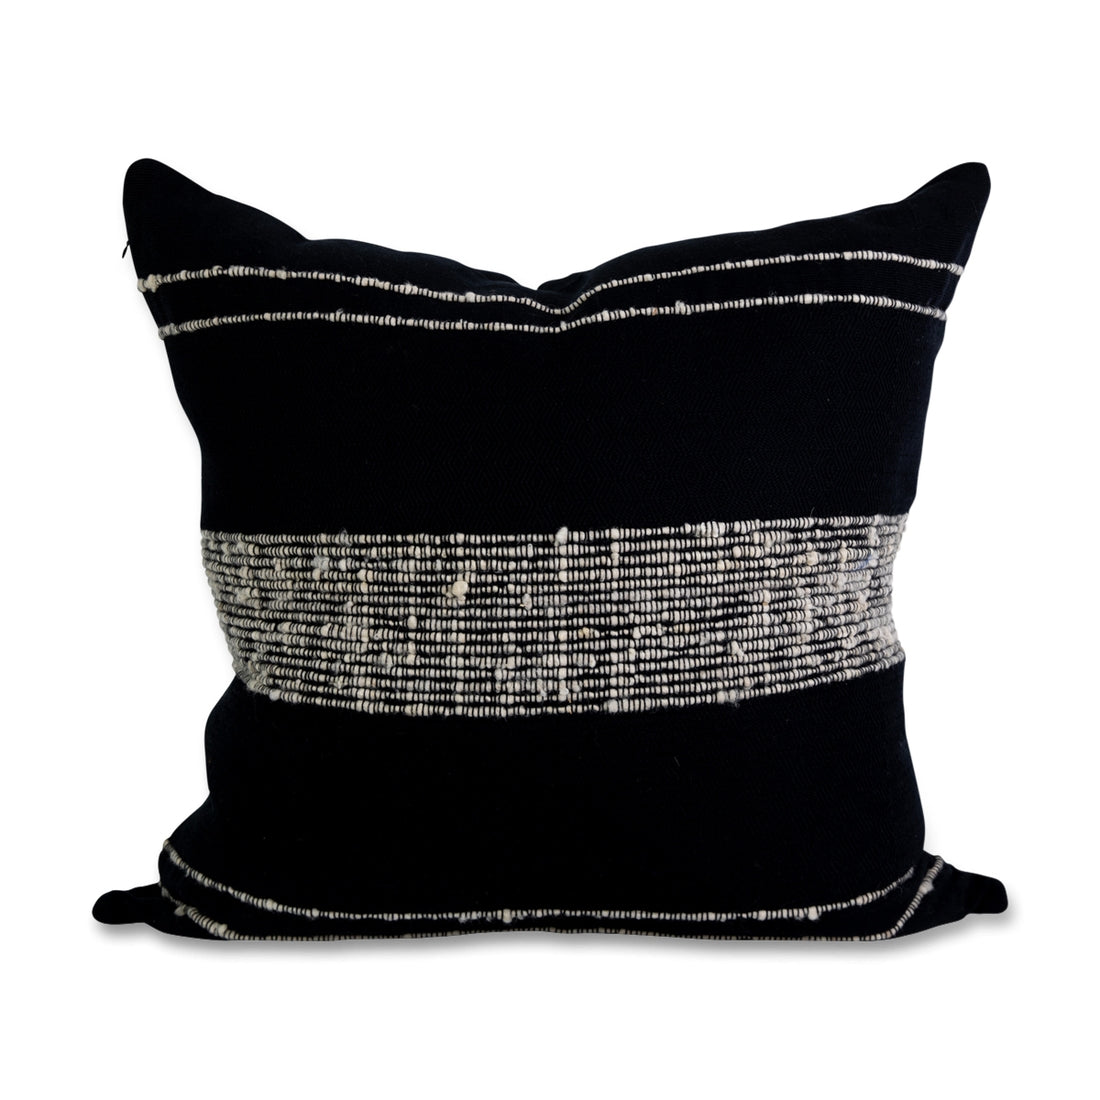 Bogota 24" Throw Pillow - Black with Ivory Stripes